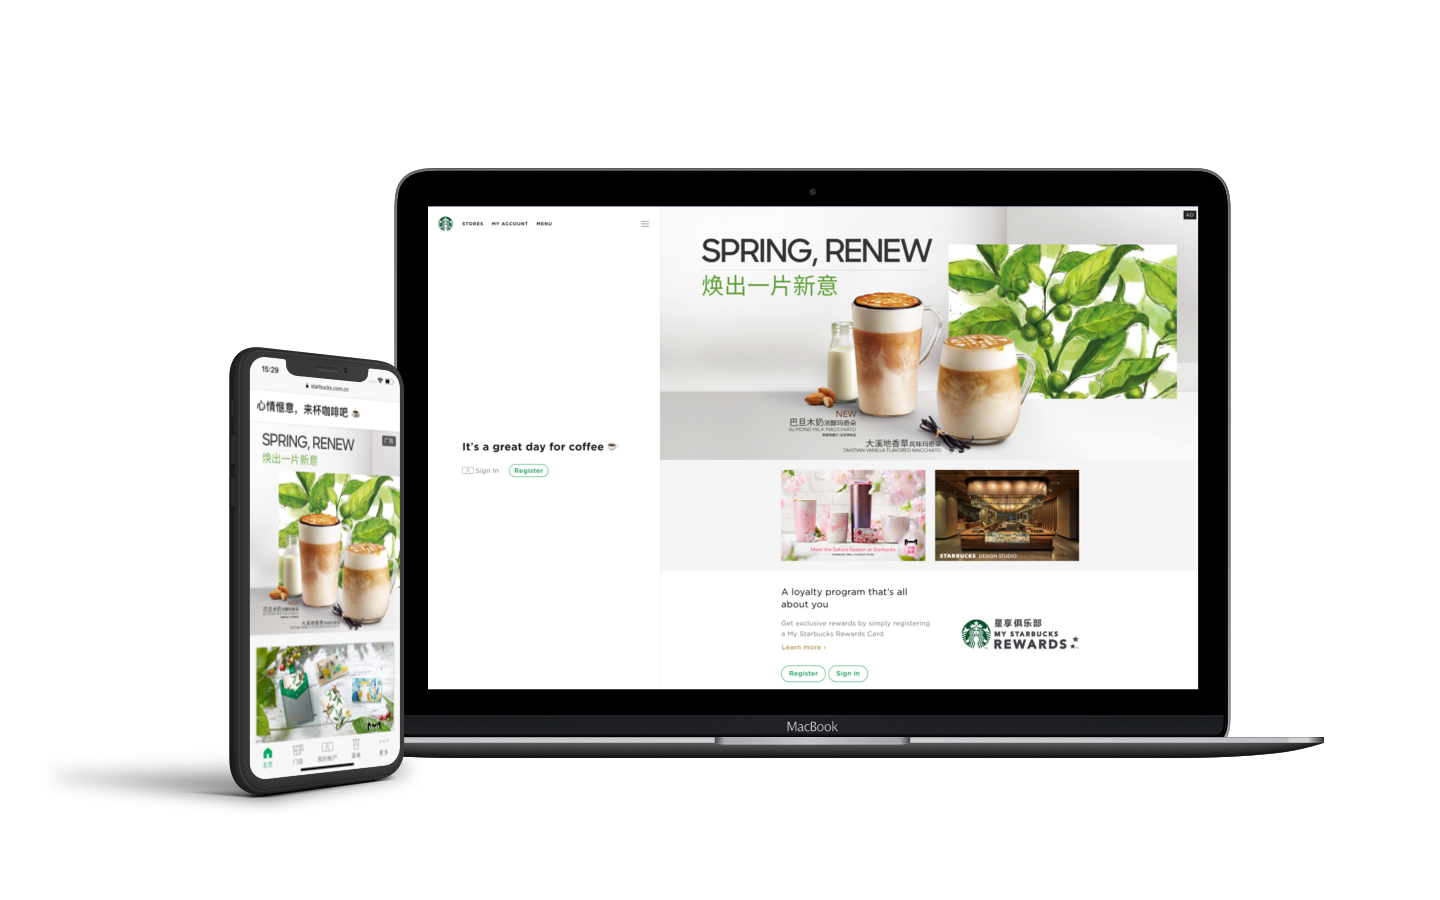 Starbucks' mobile-first website